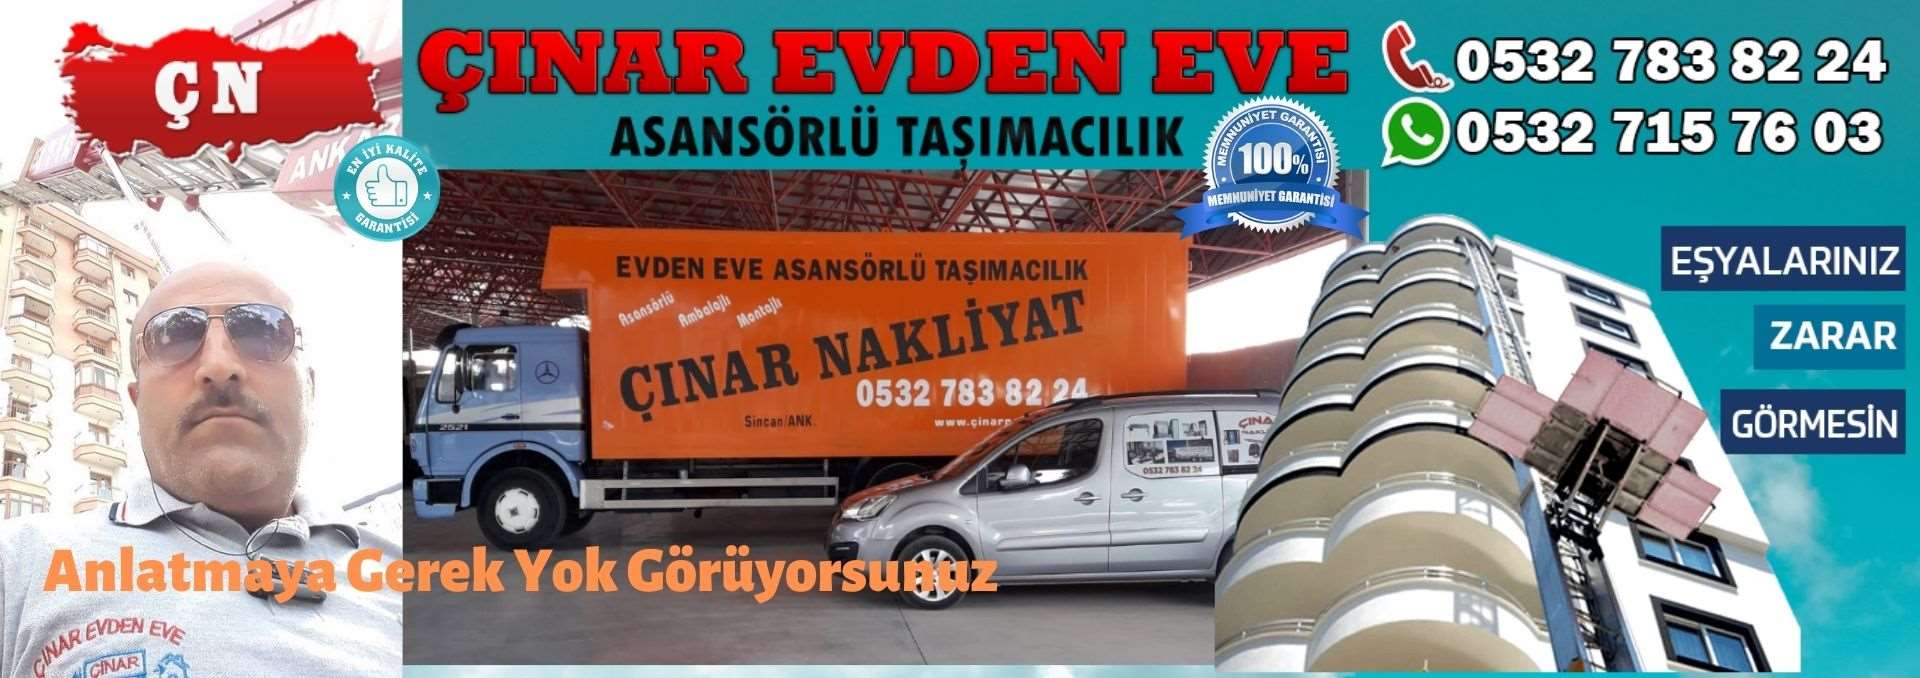 Ankara Pursaklar Evden Eve Asansörlü Ev Eşyası Taşıma 0532 715 76 03